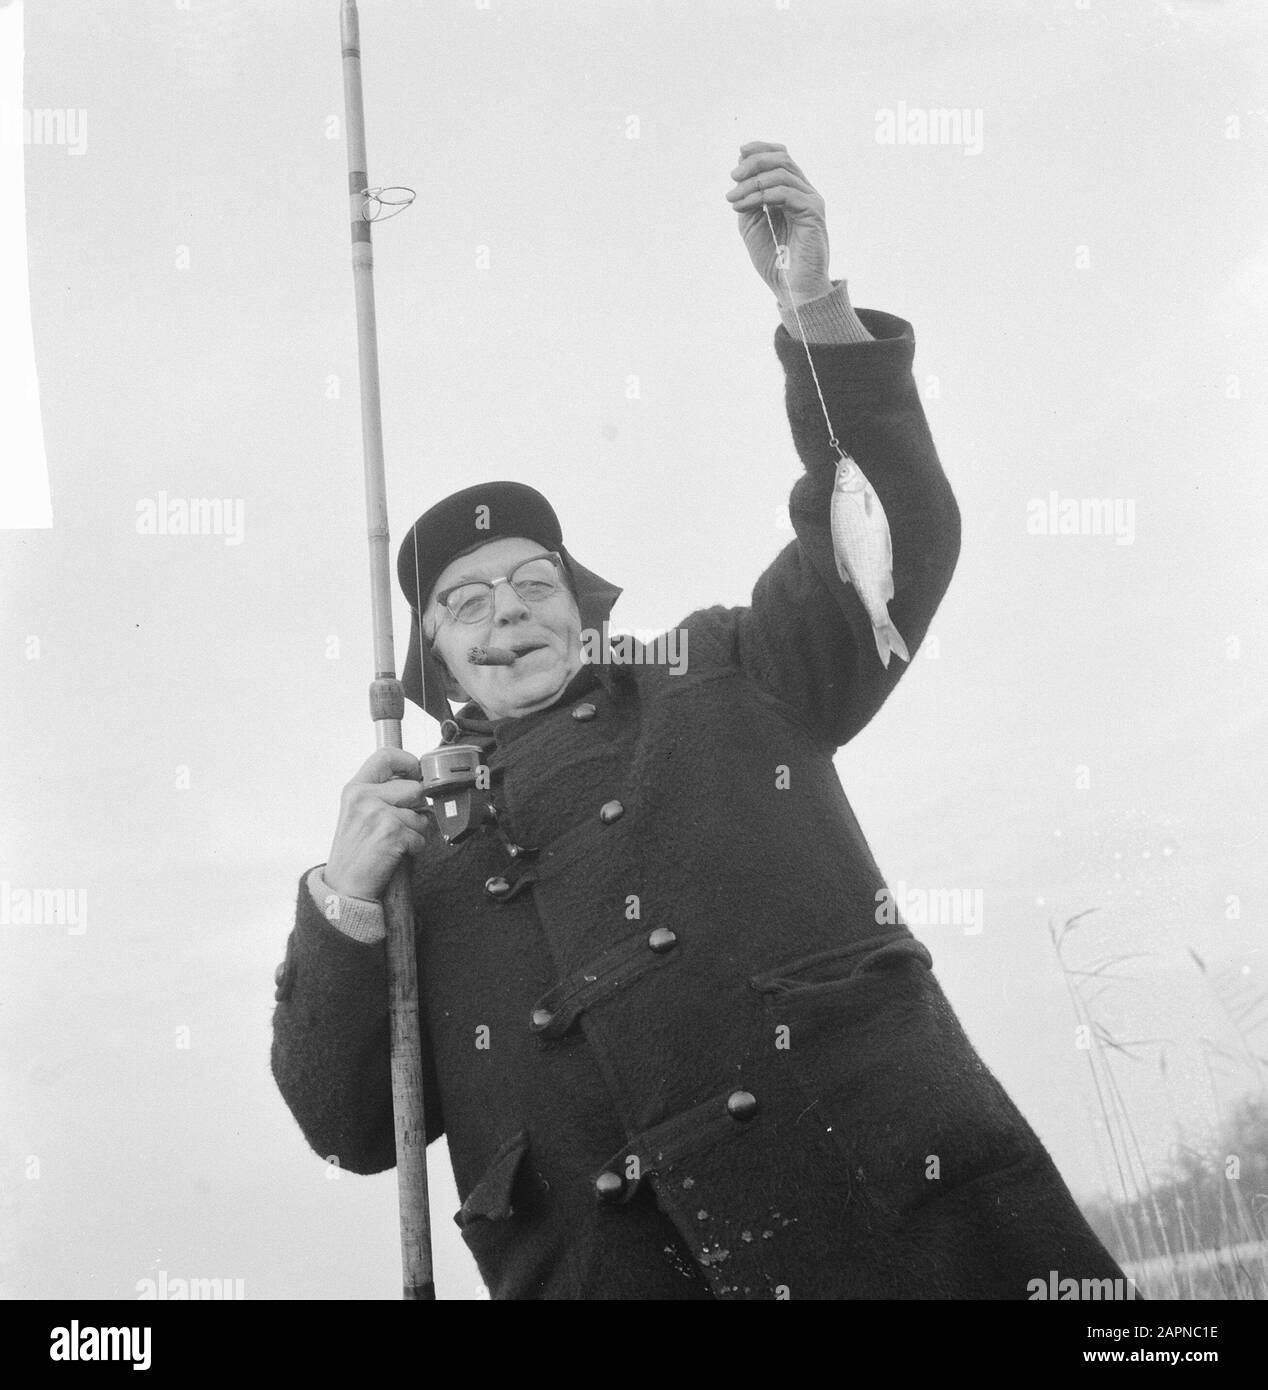 Association Club der Hundert (Fisch); Mann mit Zigarre im Mund und Angelrute in der Hand, während er seinen Fang zeigt Datum: 16. Dezember 1965 Schlüsselwörter: Angeln, Angeln, Fischer Stockfoto